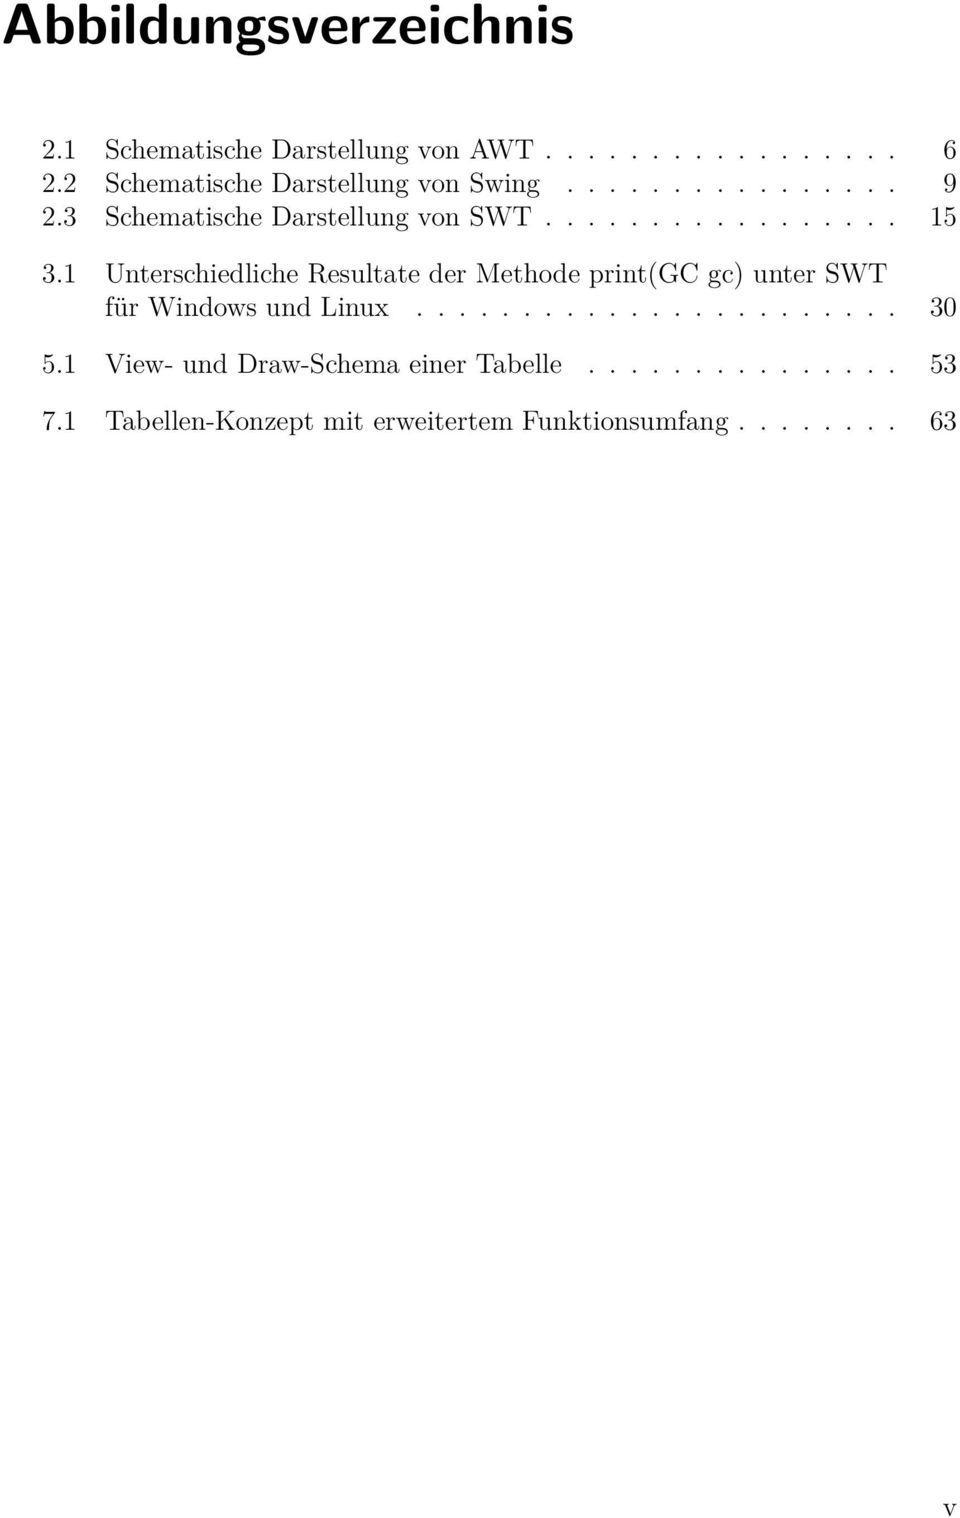 1 Unterschiedliche Resultate der Methode print(gc gc) unter SWT für Windows und Linux....................... 30 5.